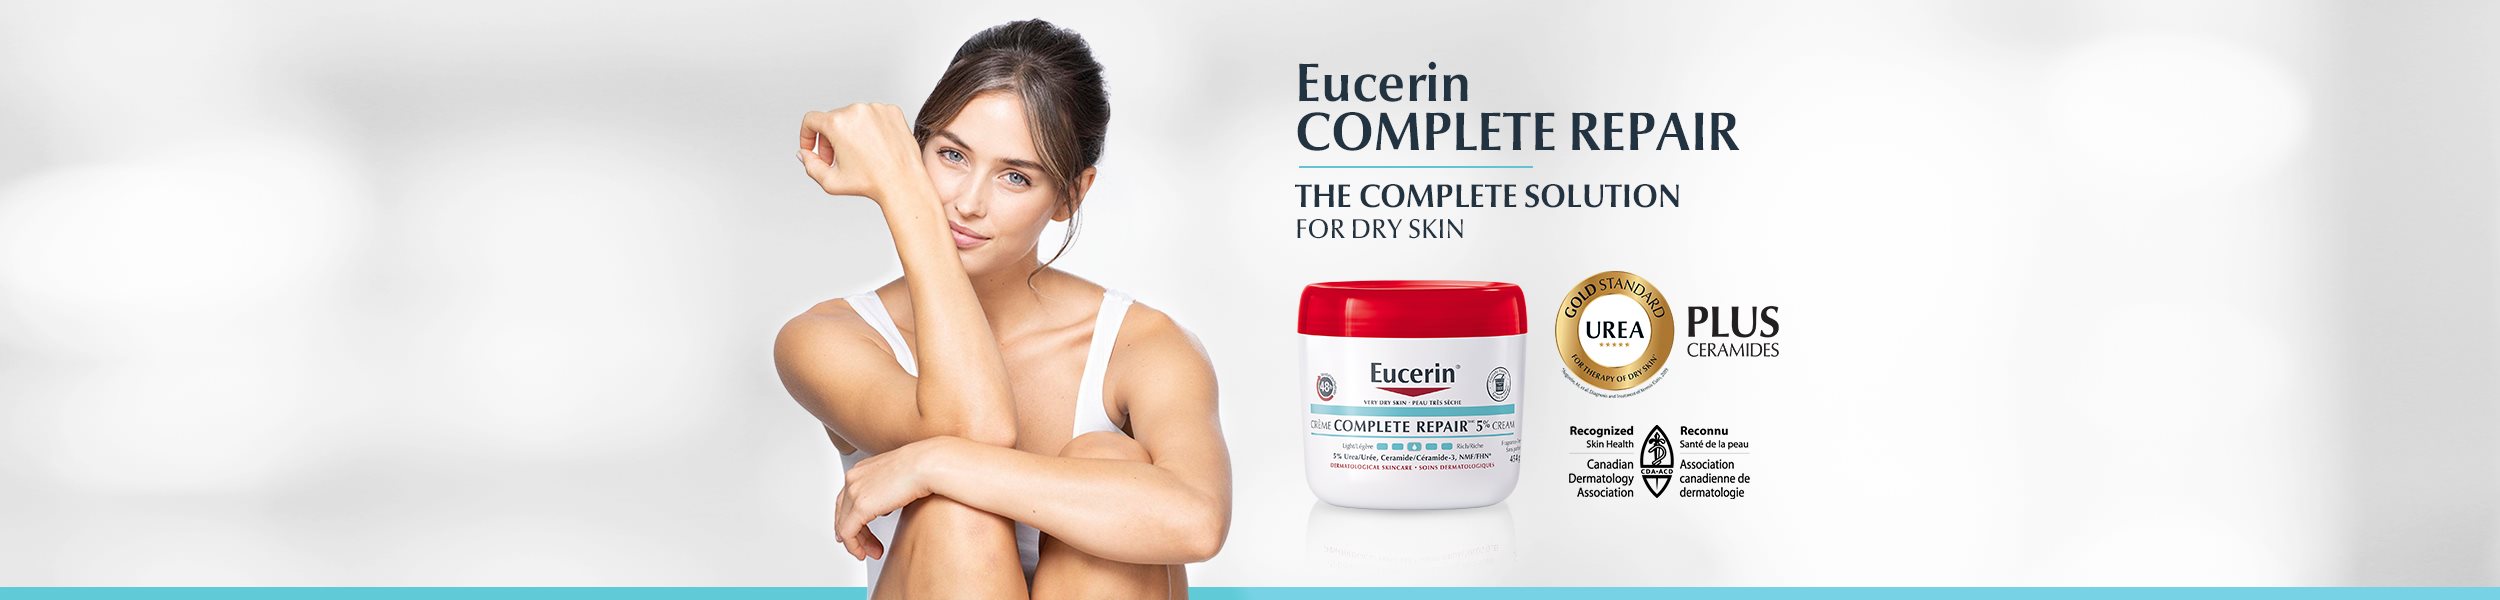 Eucerin Complete Repair